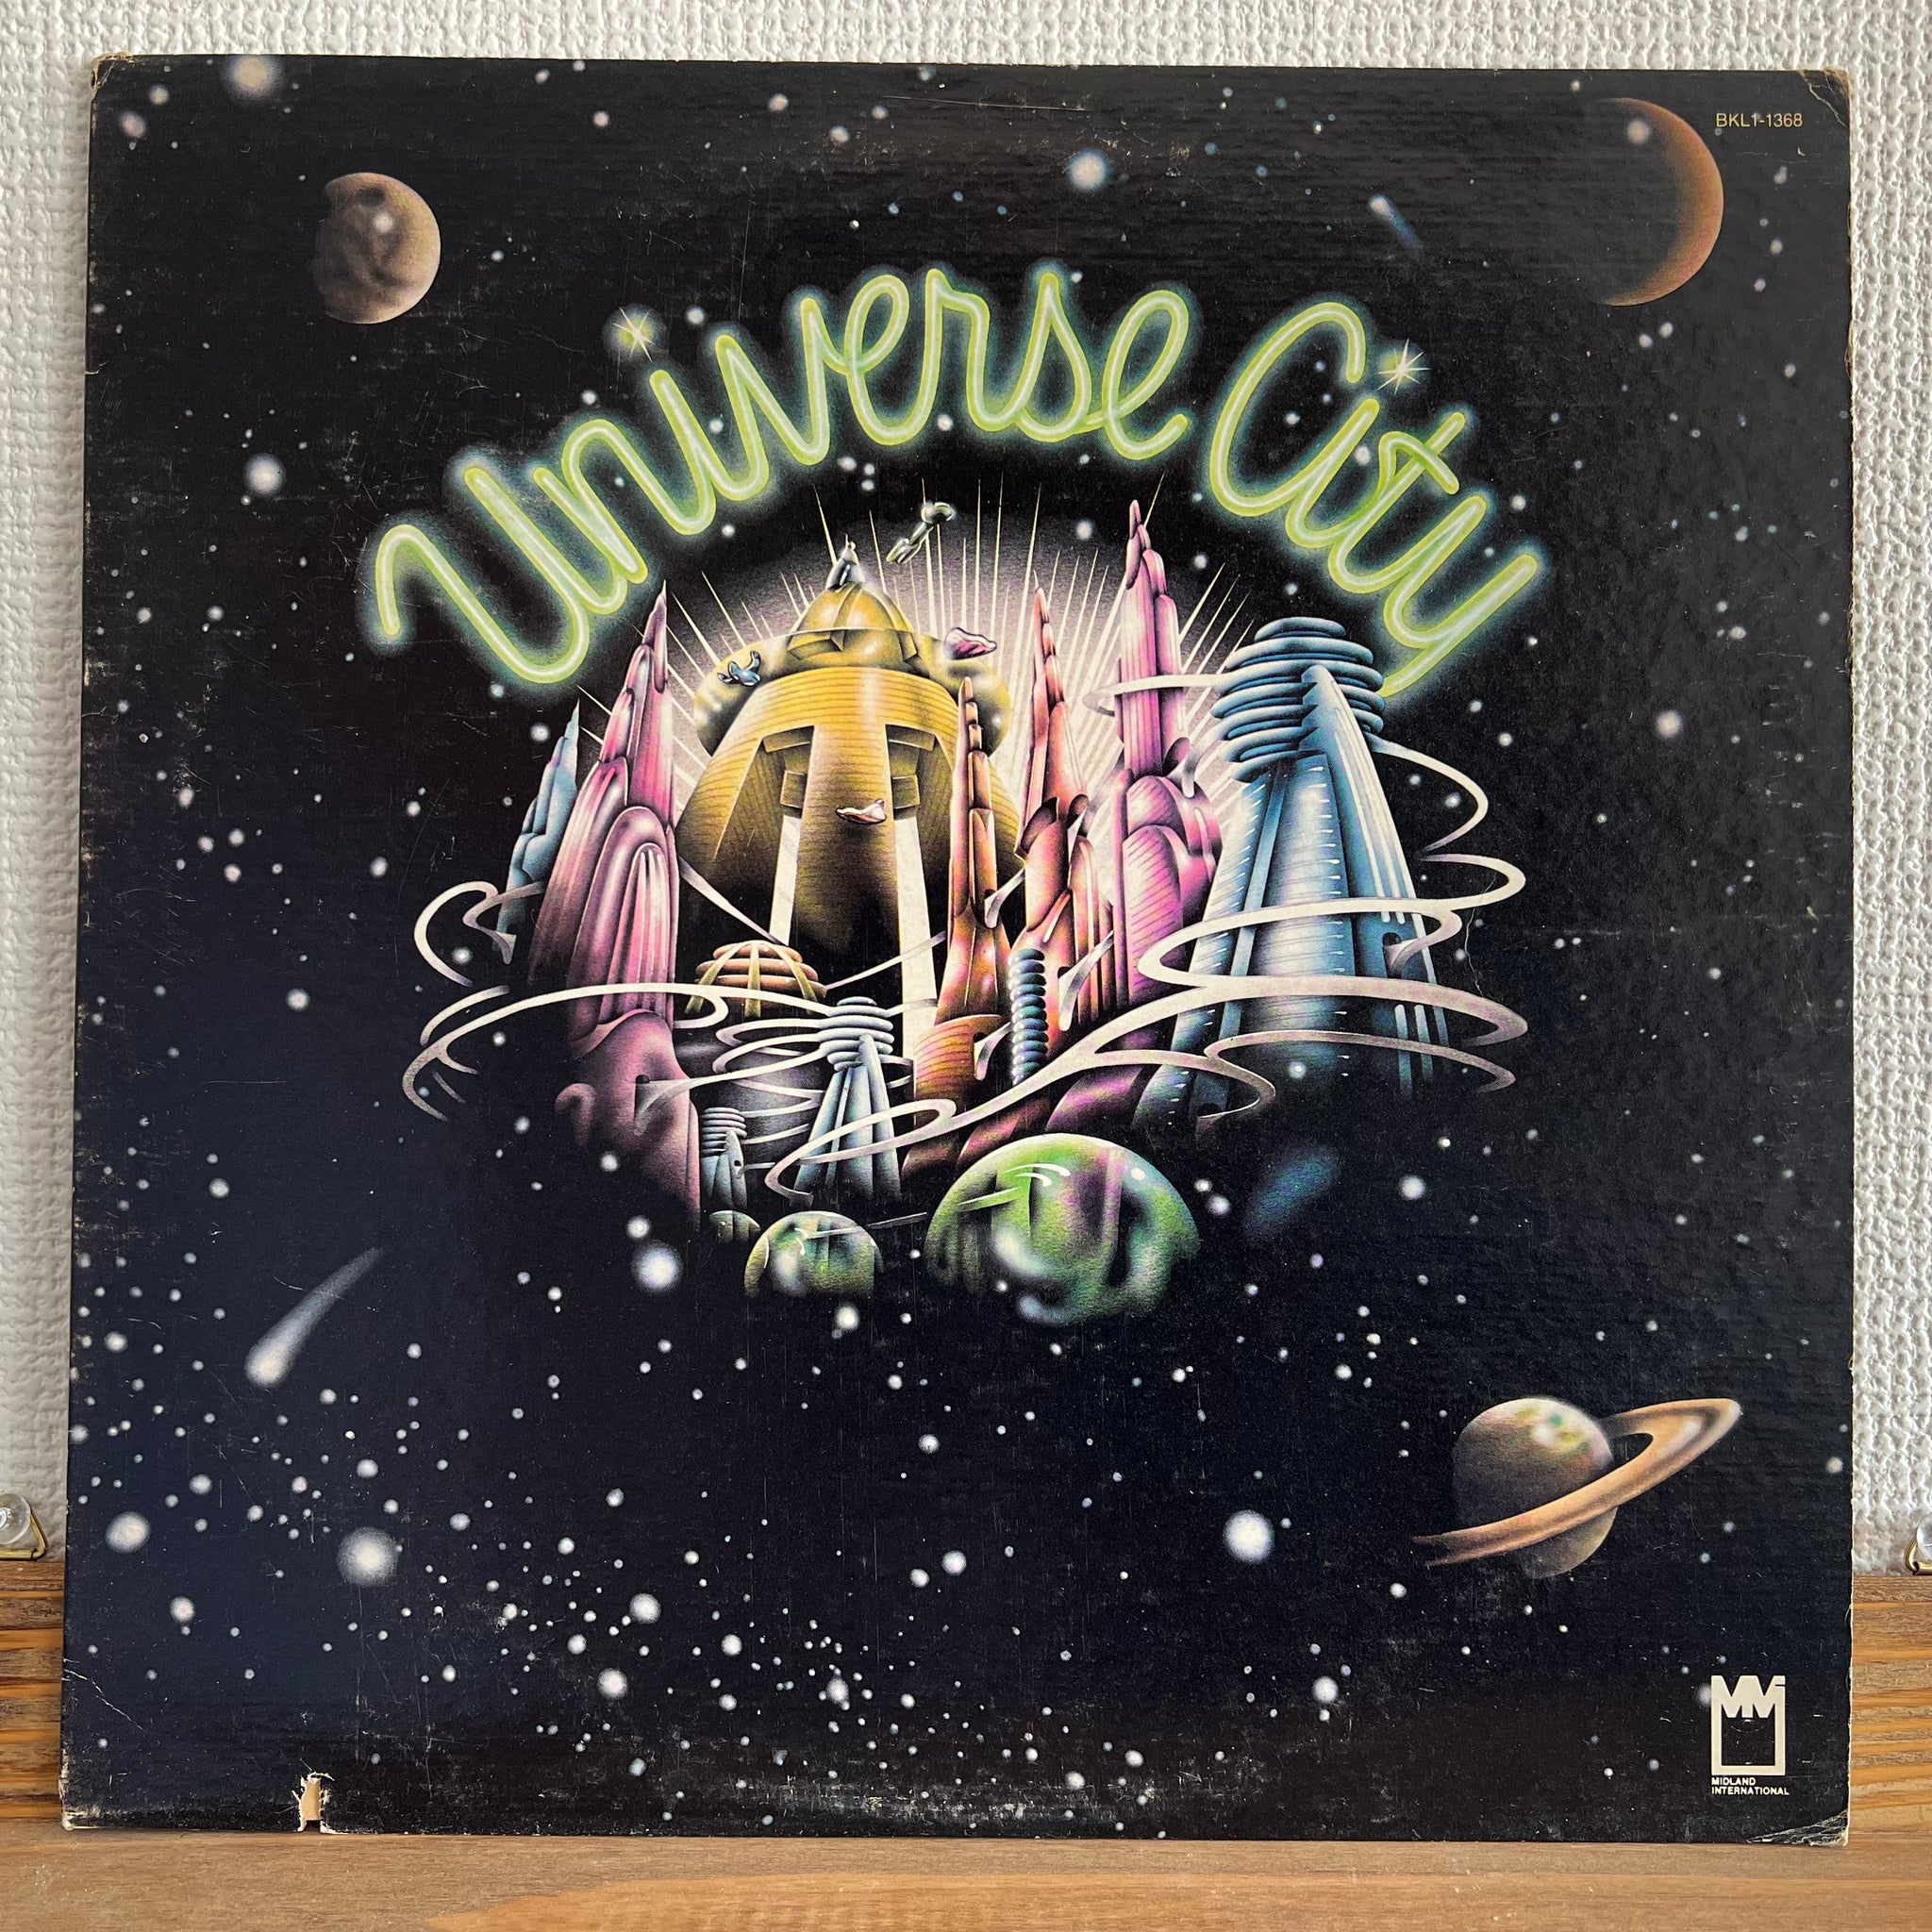 Universe City - Universe City